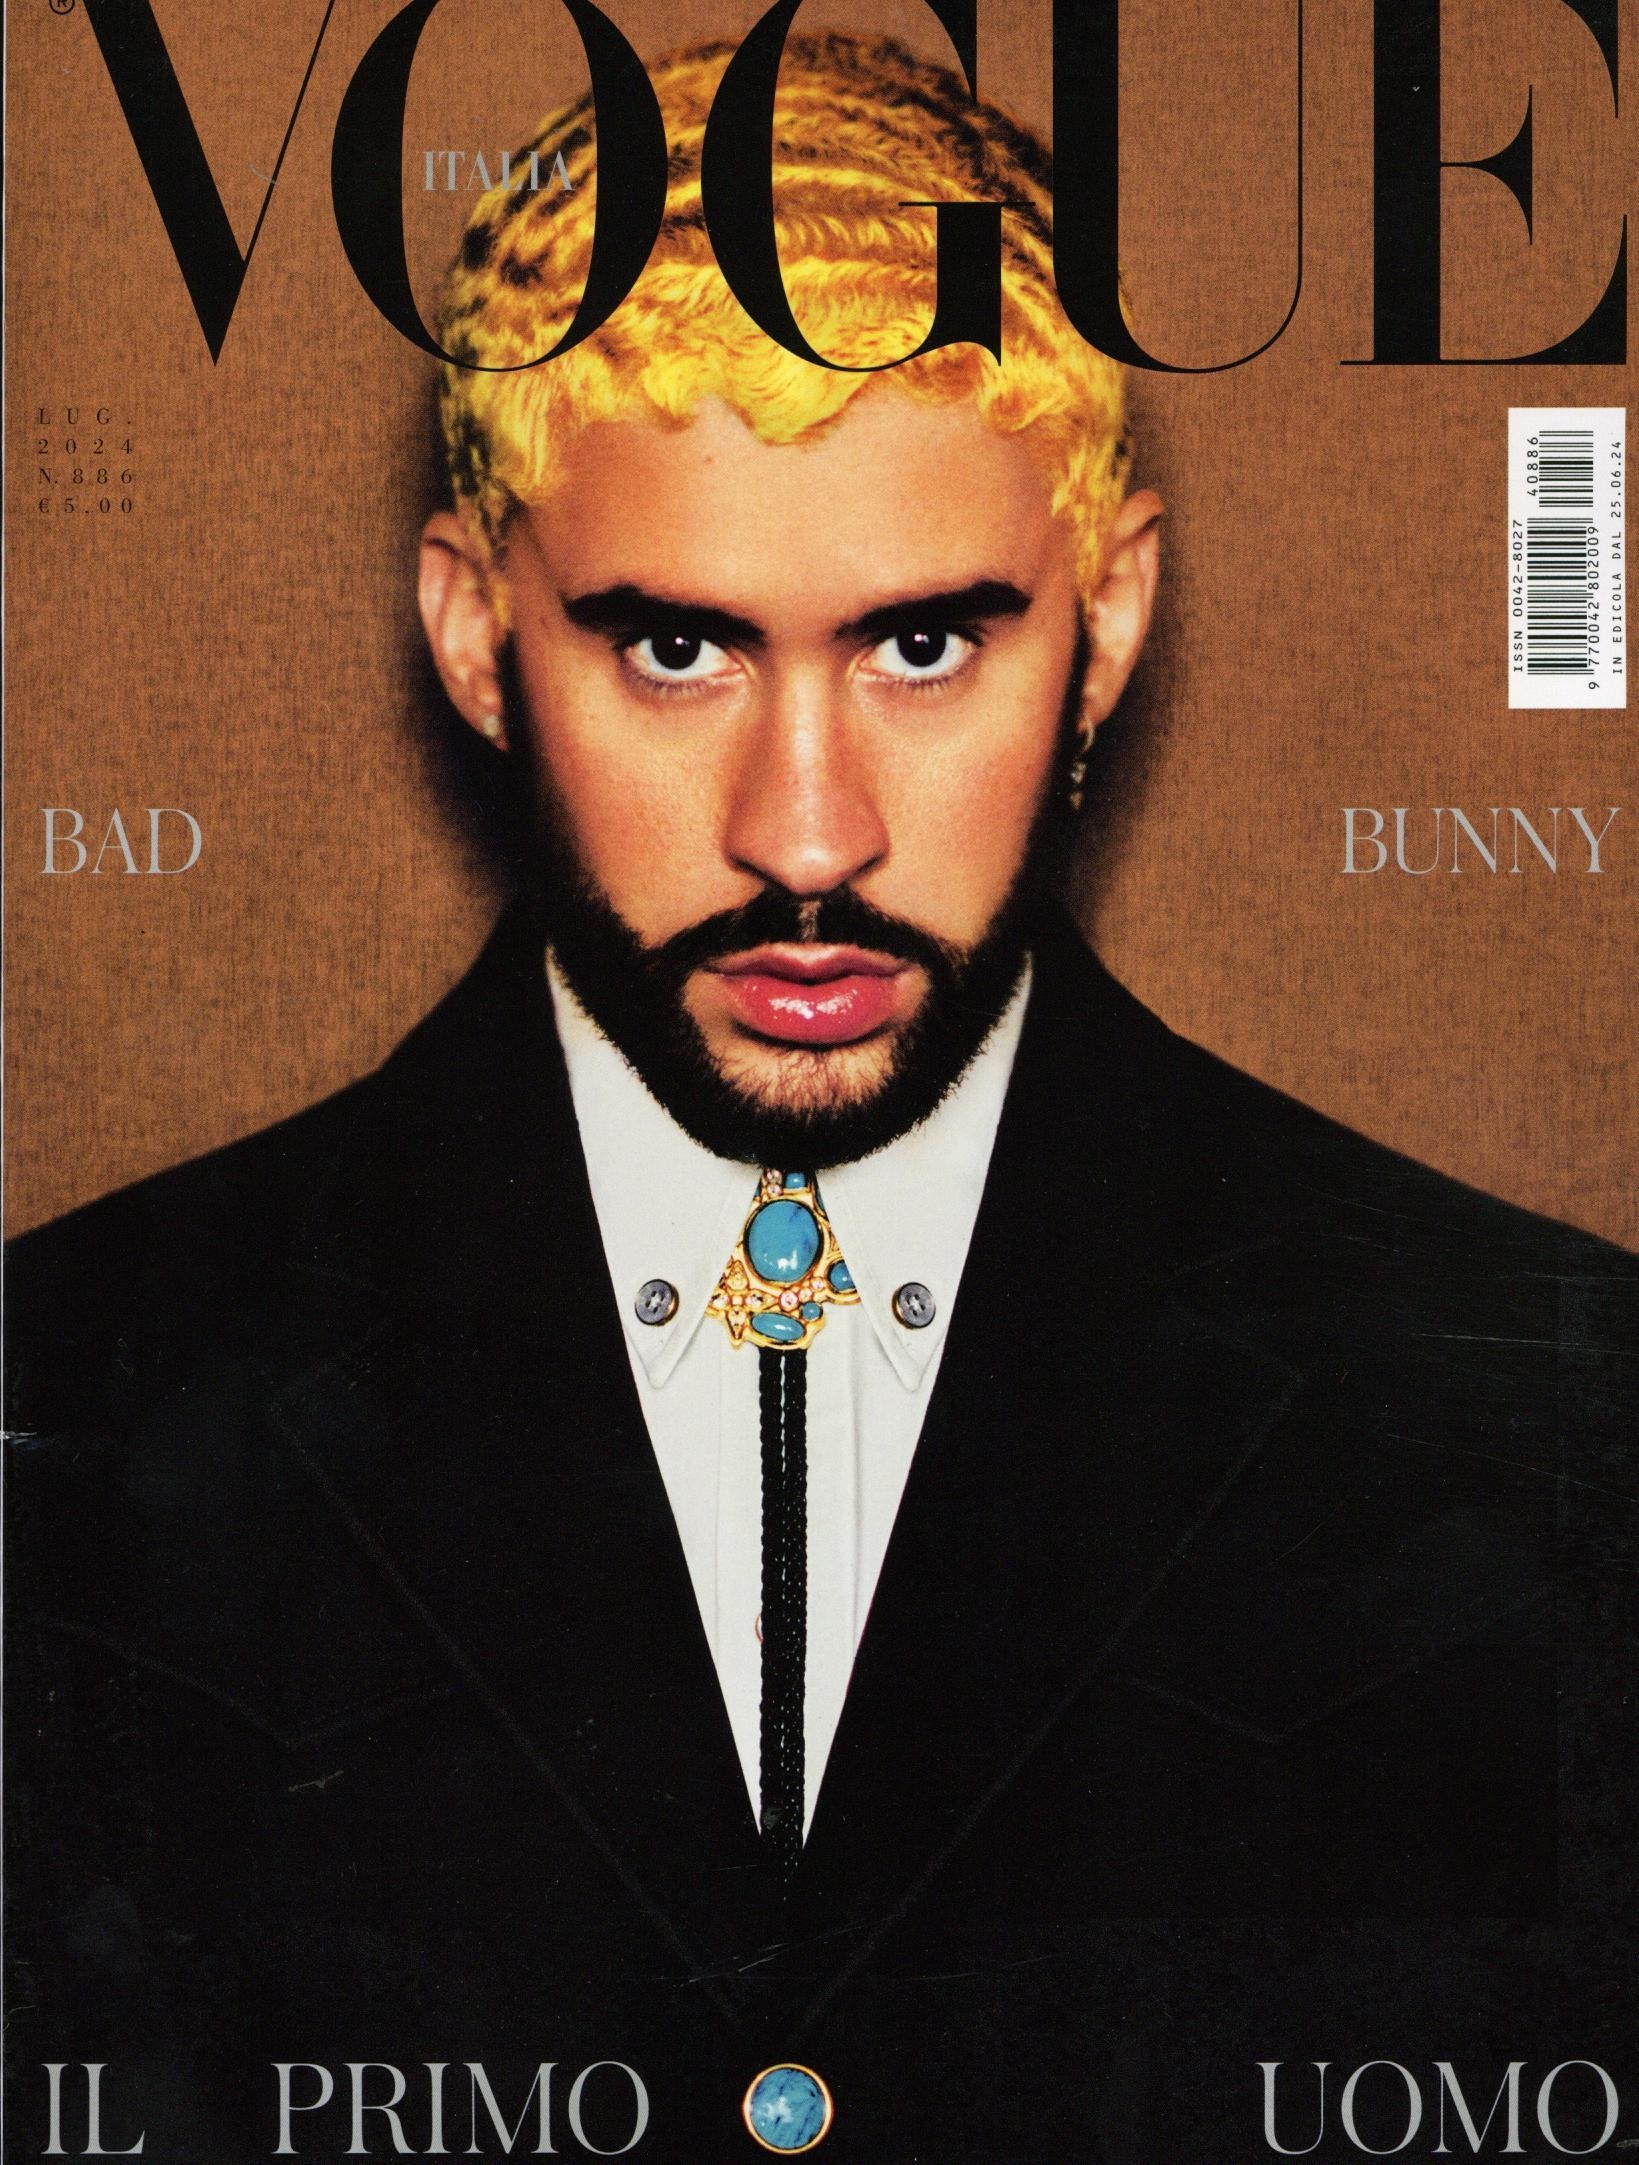 Vogue (IT)